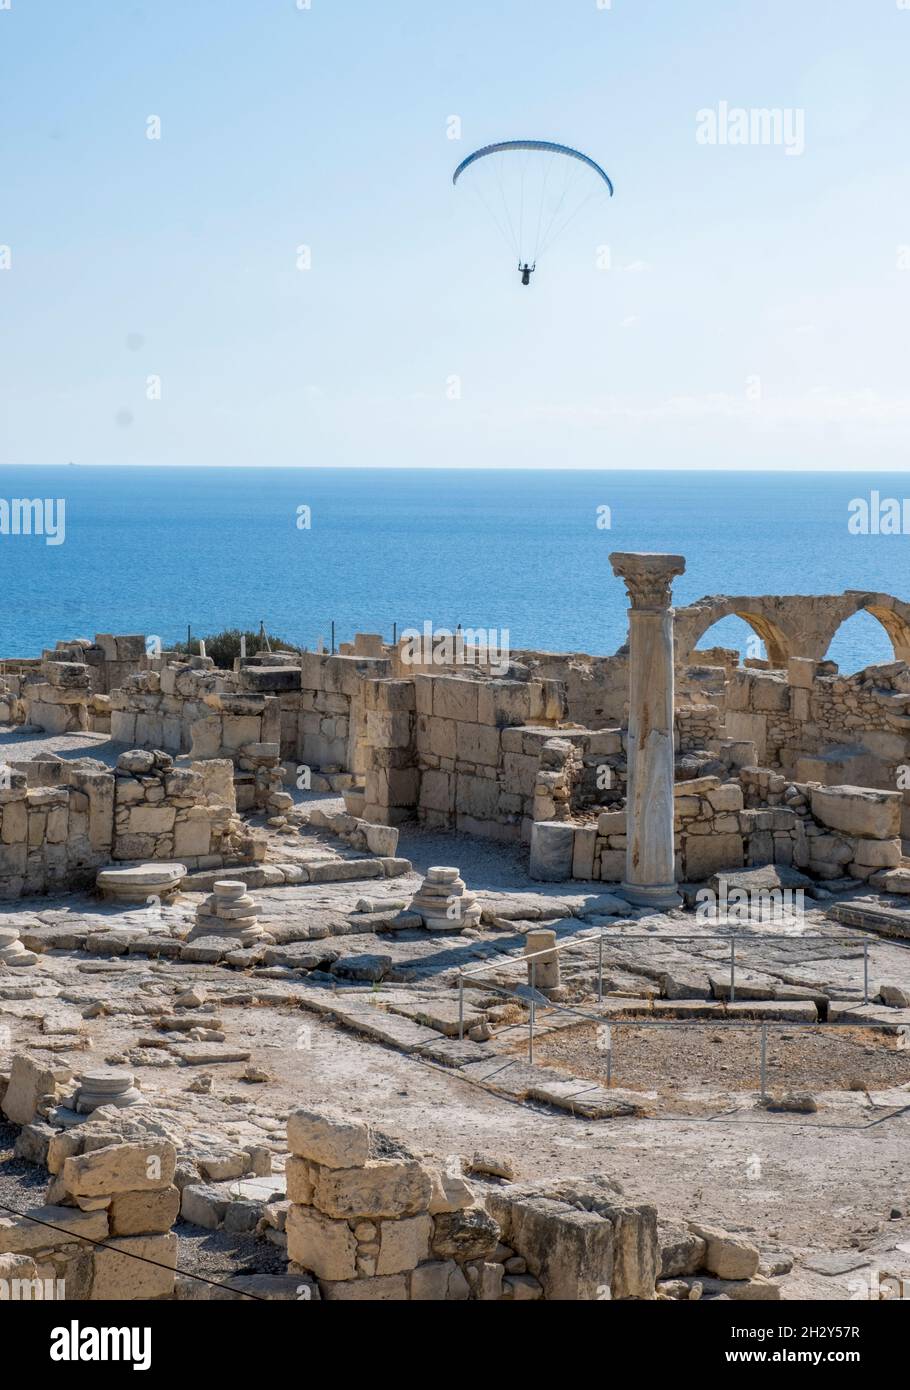 Il parapendio scivola sulle rovine della Basilica cristiana presso il sito archeologico di Kourion, Cipro. Foto Stock